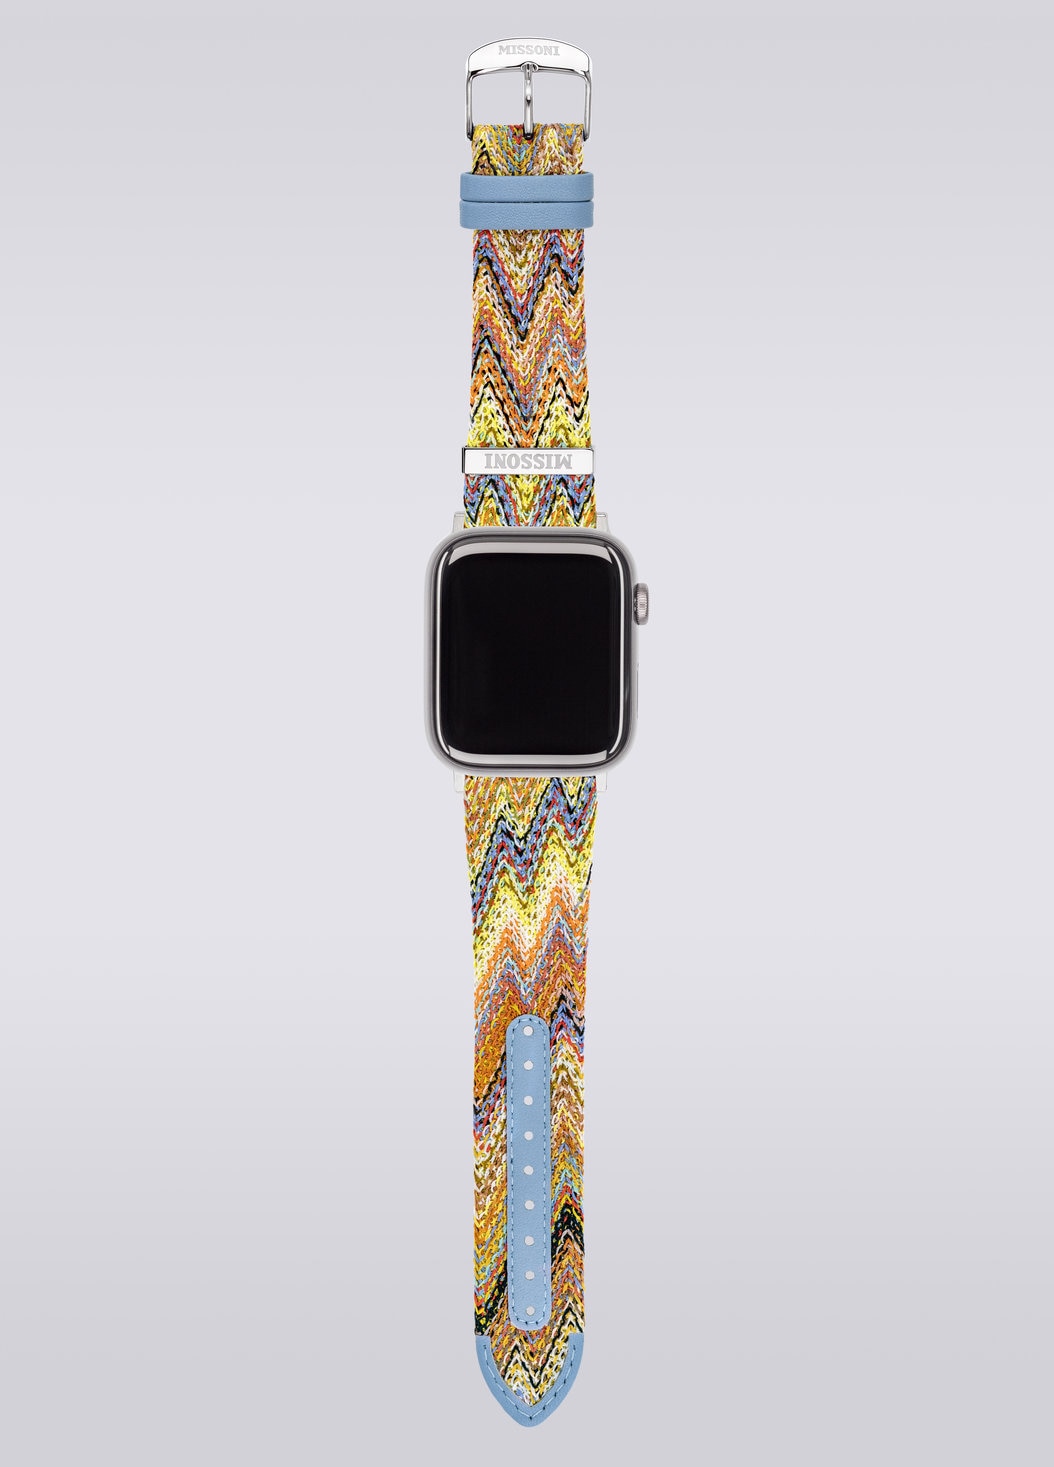 Missoni Fabric 24 mm mit Apple Watch kompatibles Armband, Mehrfarbig  - 8053147046273 - 3